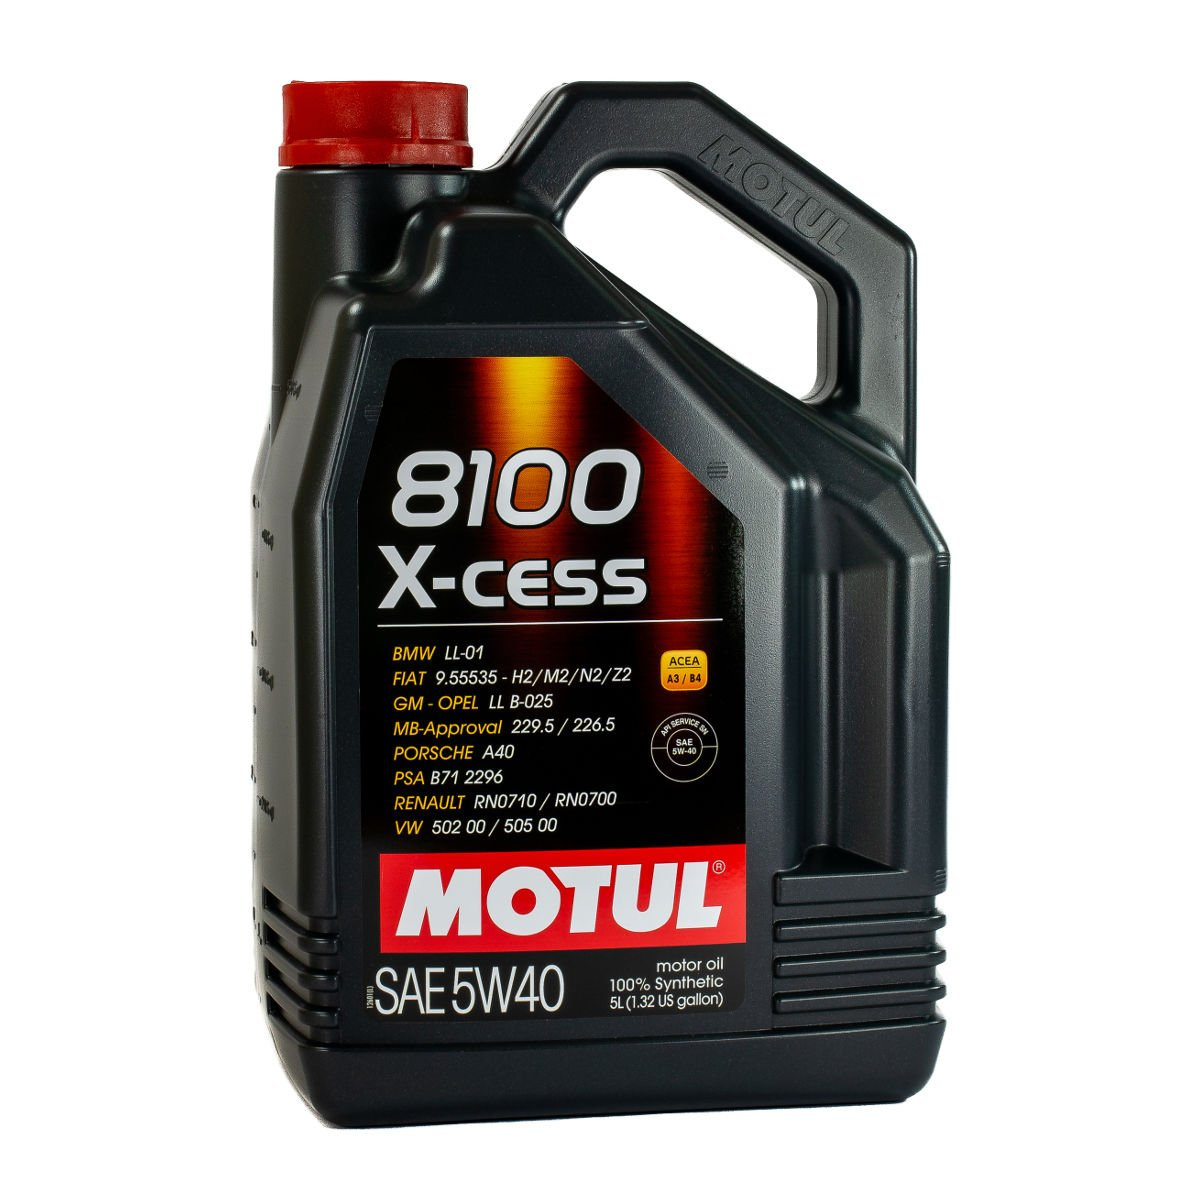 Olej silnikowy Motul 8100 X-cess 5W/40 5L • autokosmetyki • AutoChemia.pl